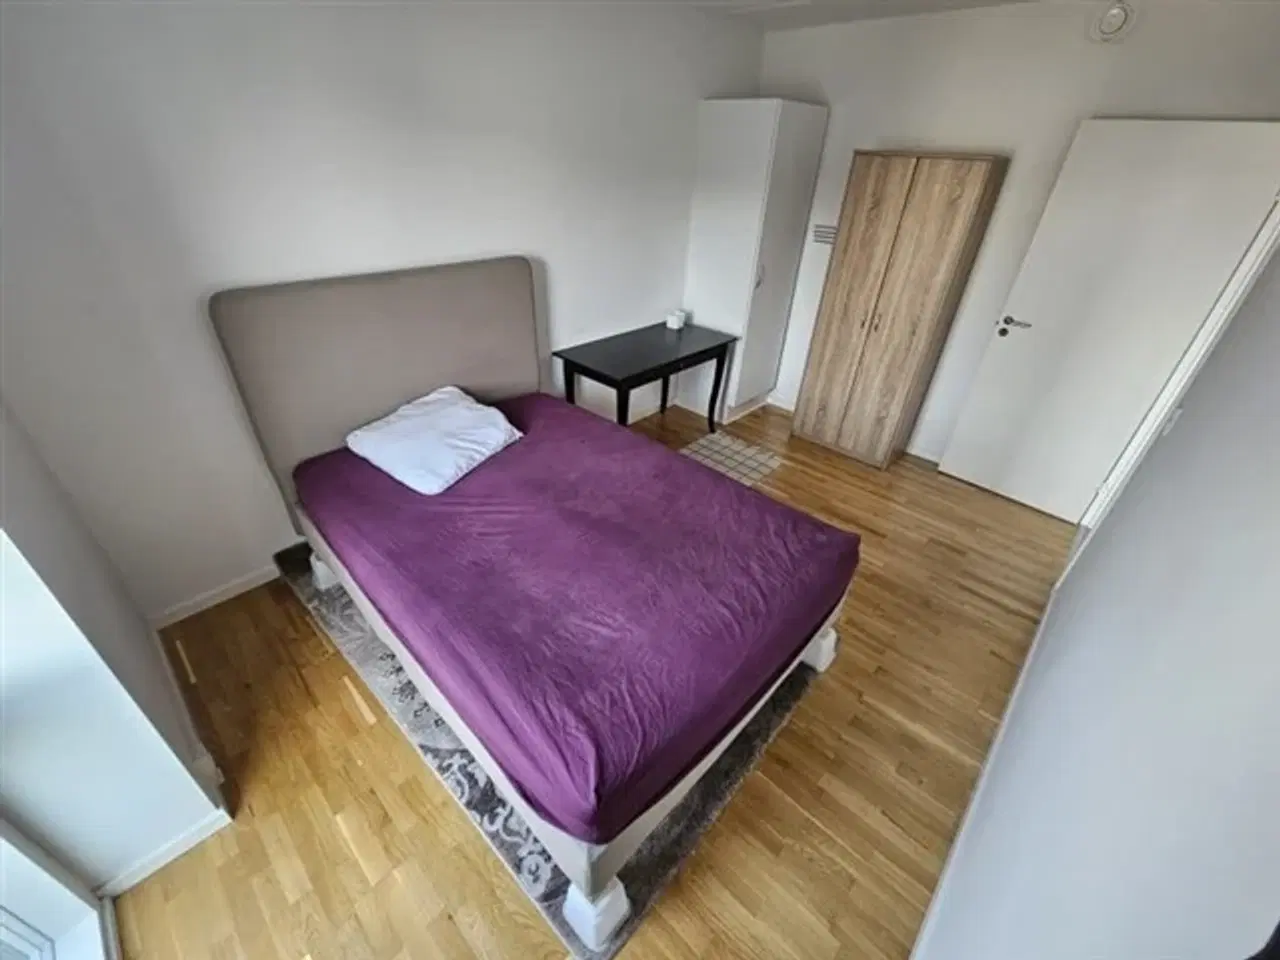 Billede 1 - 1 Bedroom on shared apartment - KBH SV, København V, København